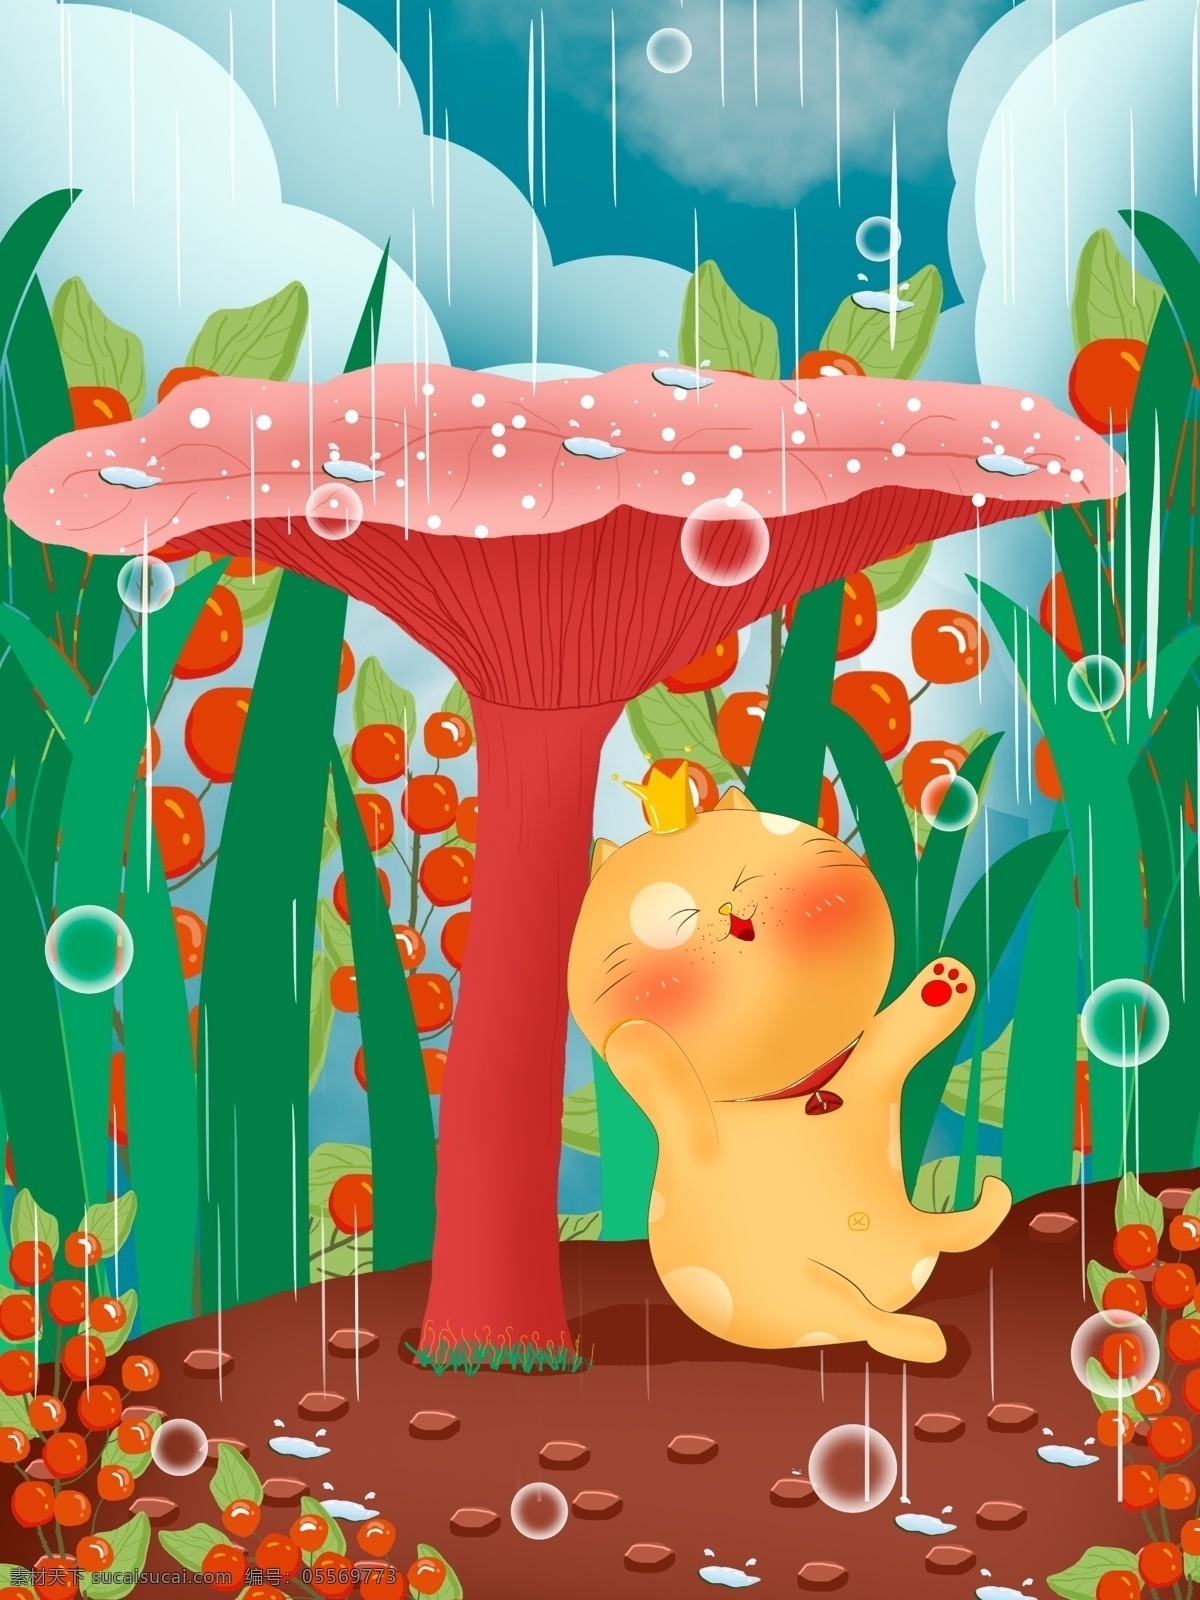 谷雨 雨 中 嗨 皮 小 肥 猫 扁平 风 插画 节日节气 下雨 花 草 泡泡 气泡 草丛 可爱 委屈 猫咪 肥猫